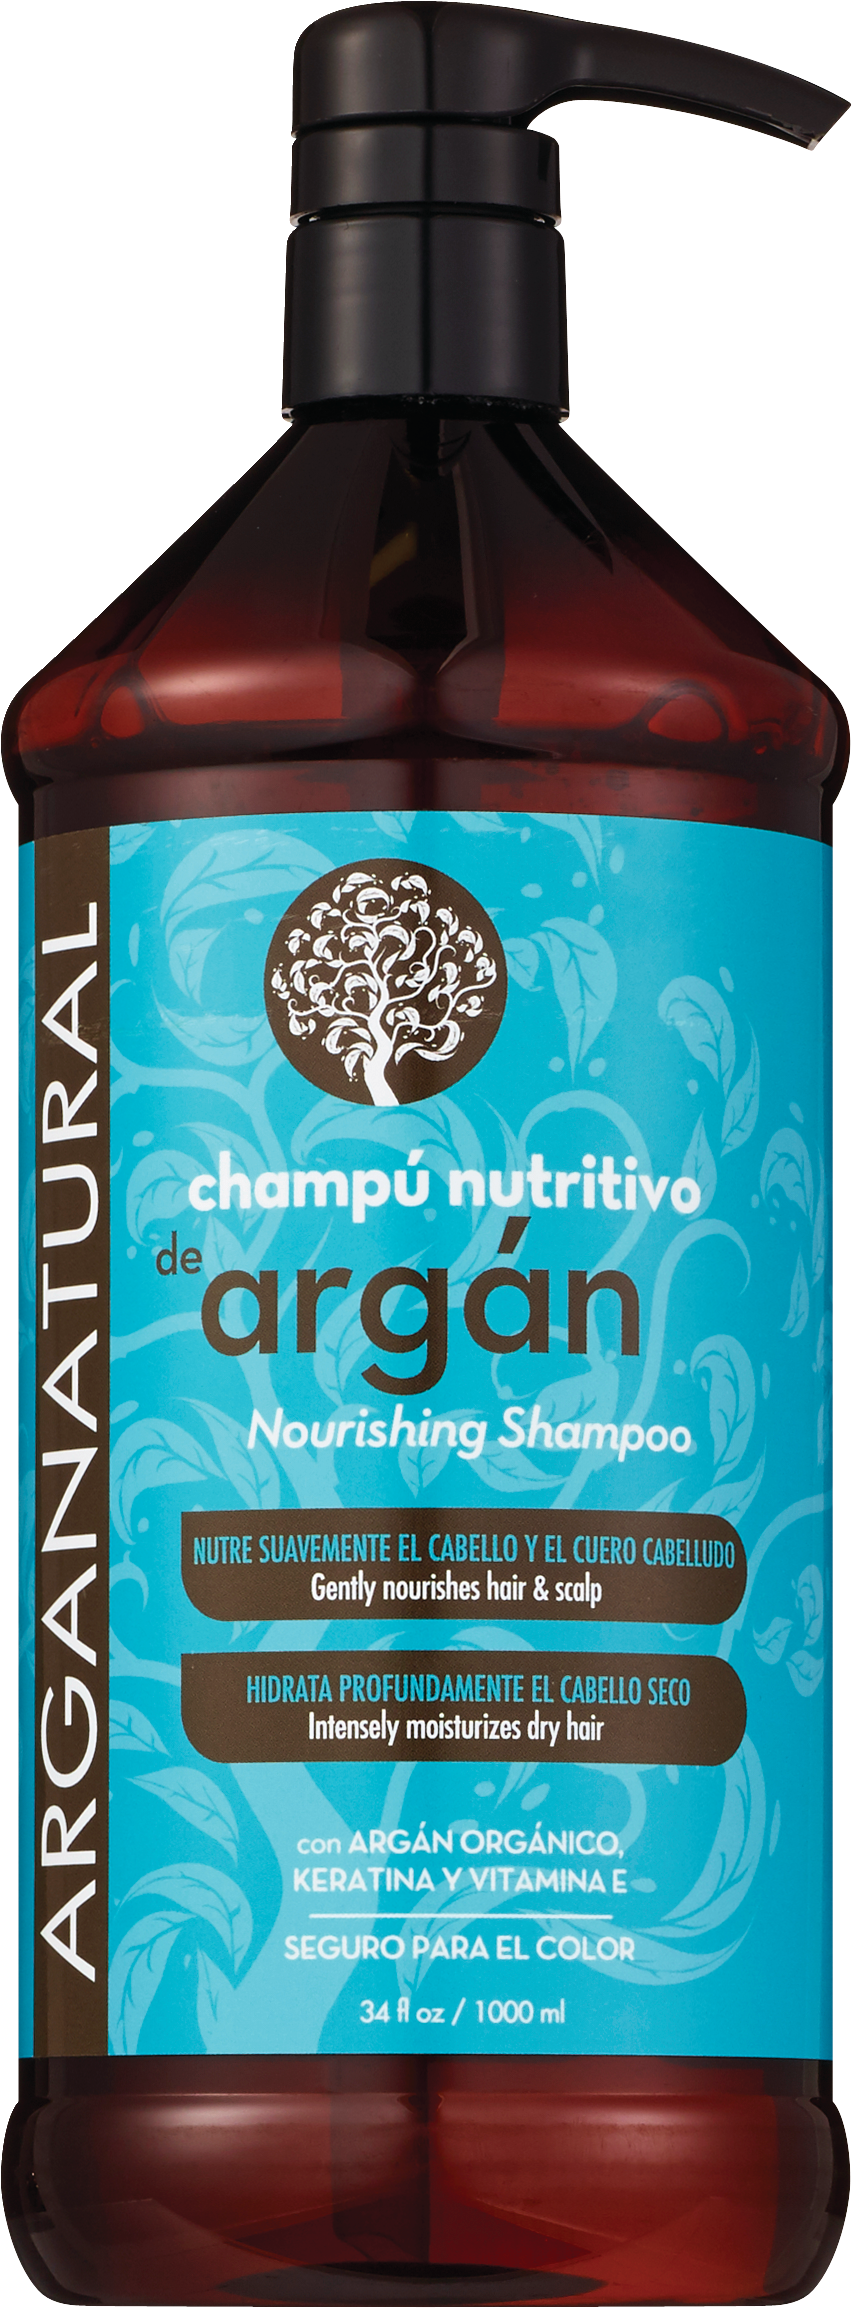 Champu Nutritive de Argan - Champú nutritivo, 34 oz